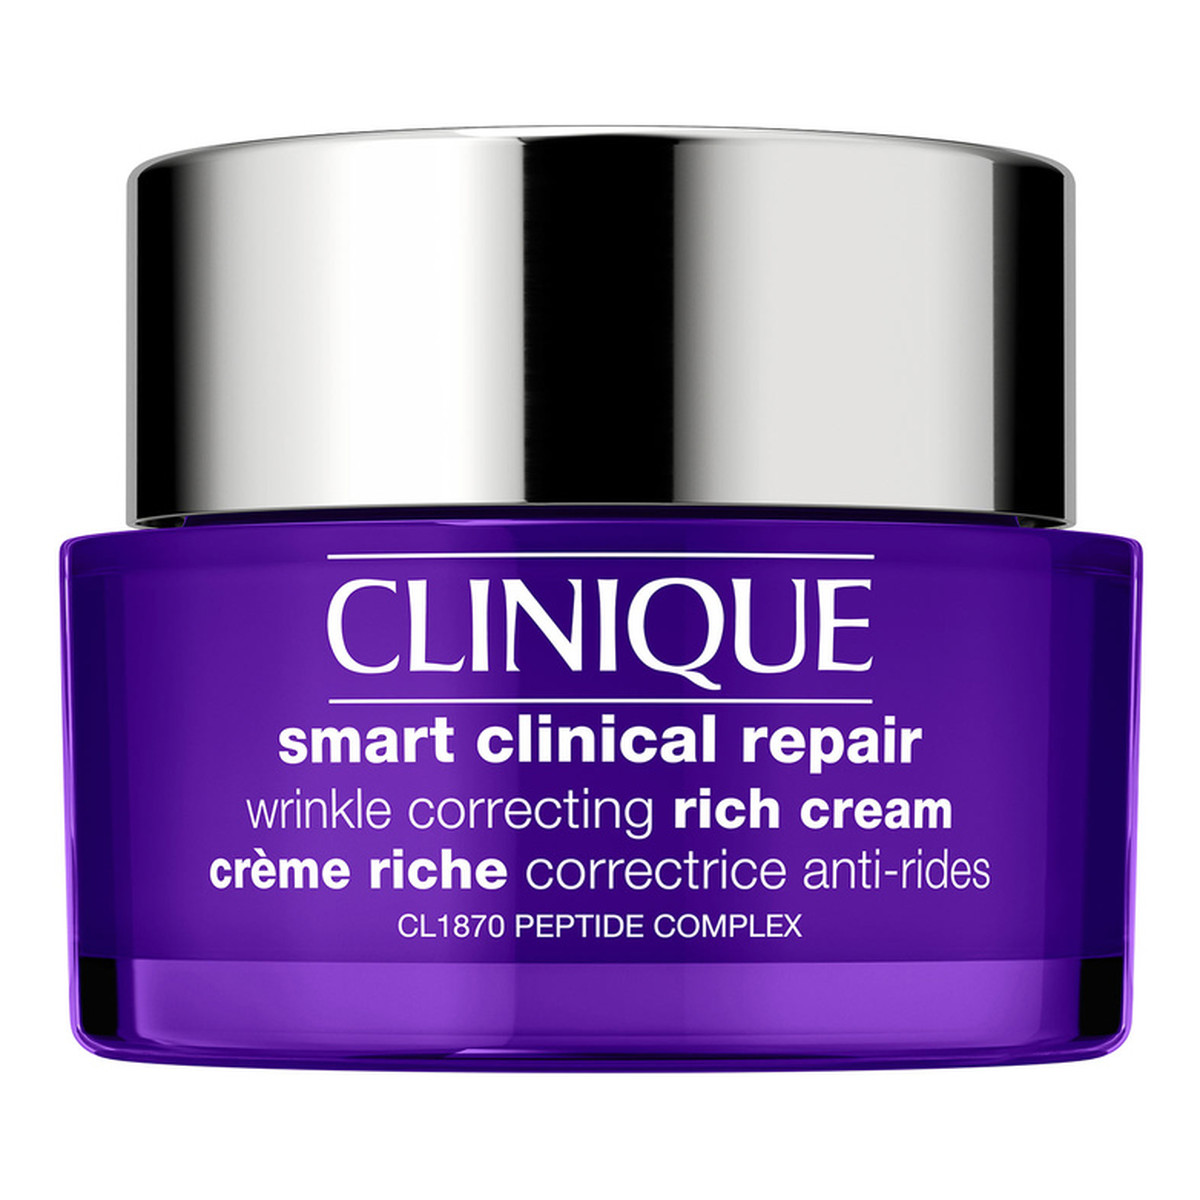 Clinique Smart Clinical Repair™ Wrinkle Correcting Rich Cream bogaty Krem korygujący zmarszczki 50ml